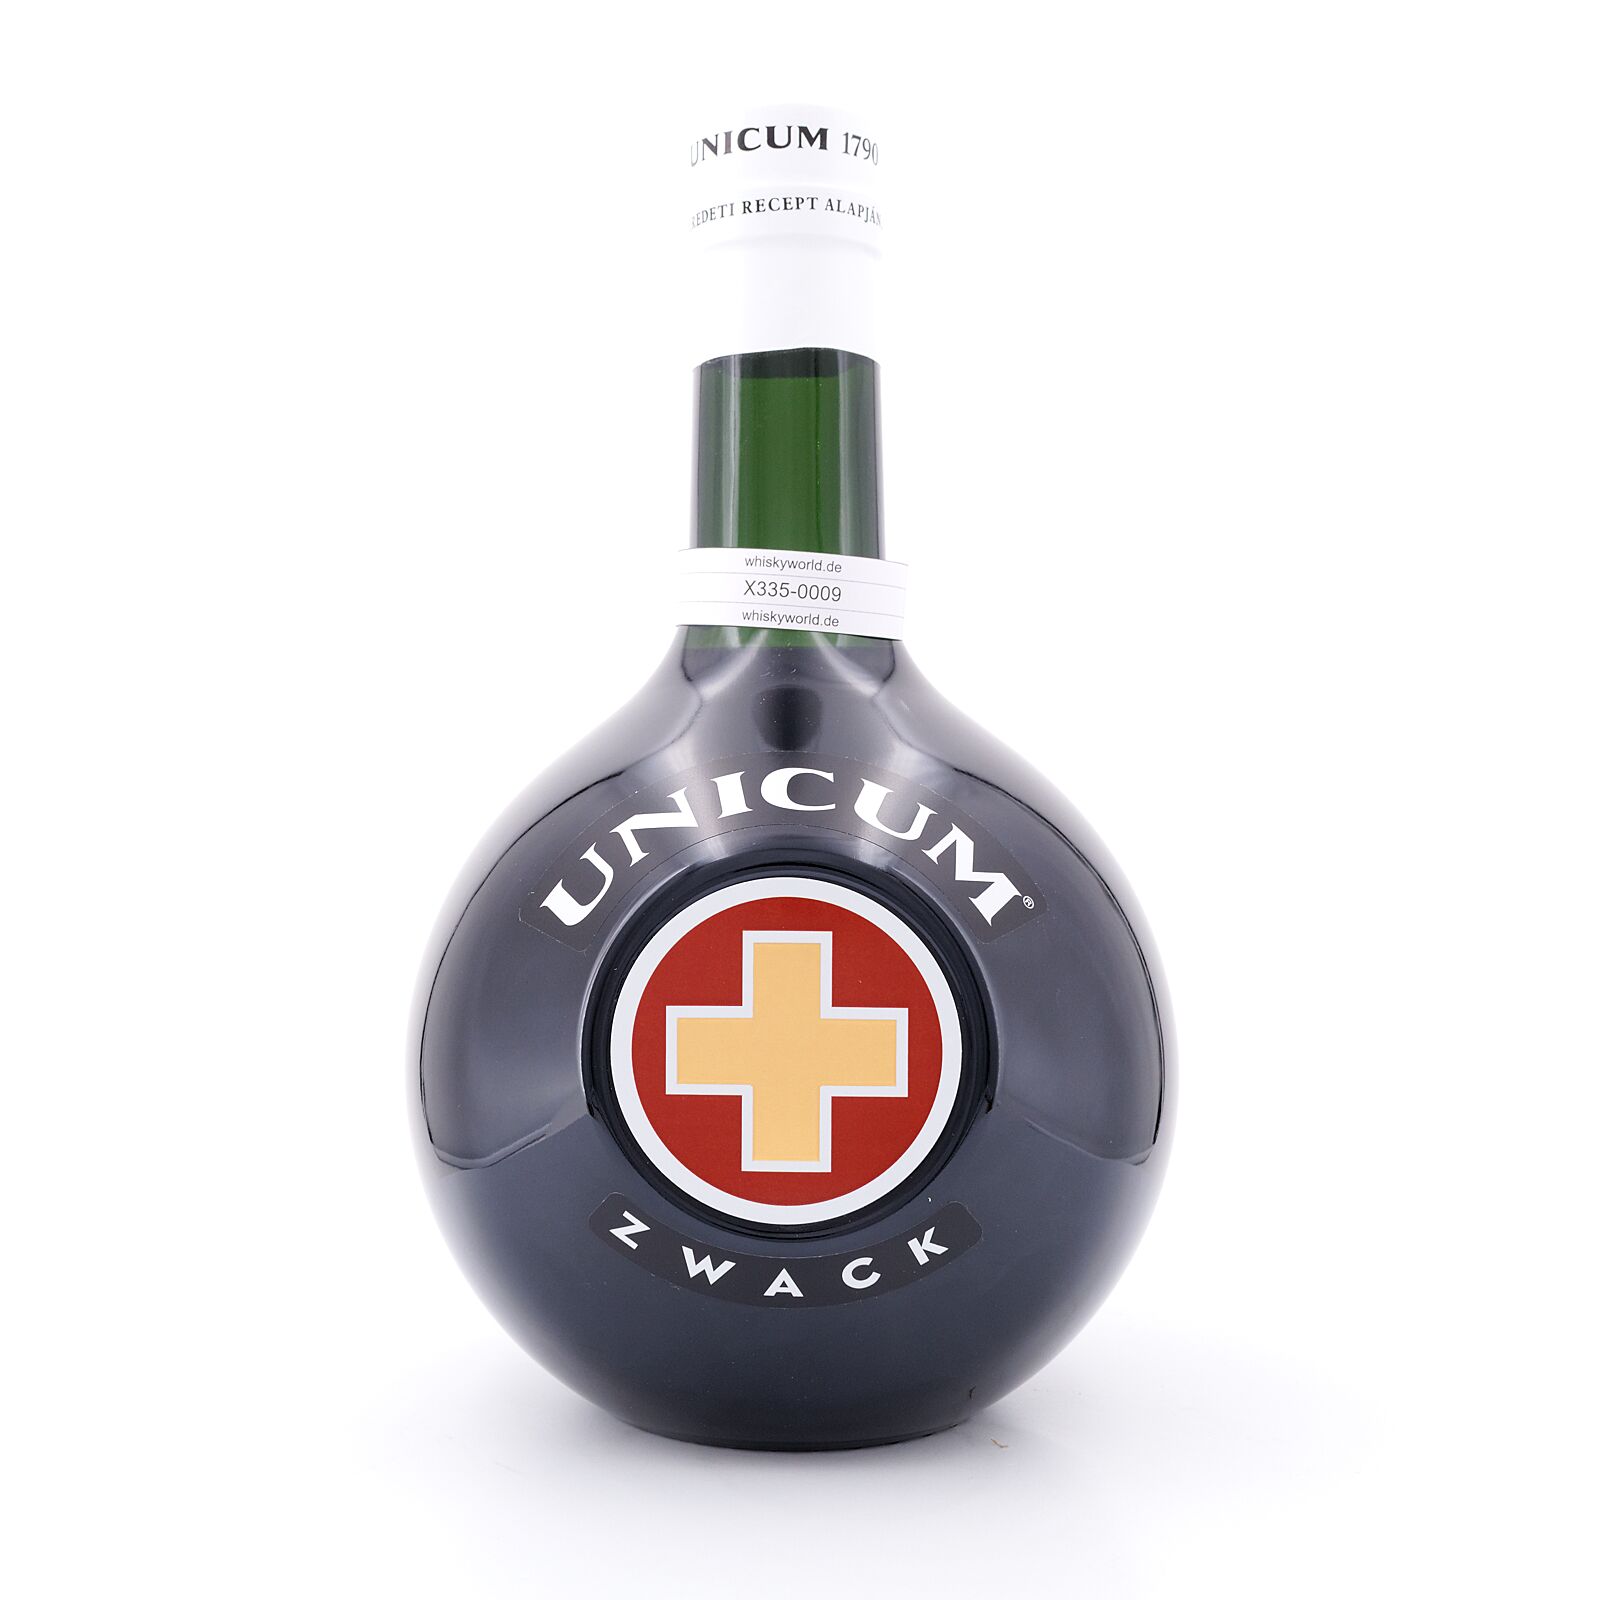 Zwack Unicum Kräuterlikör 40.0% 3 3 vol Liter Liter/ Flasche